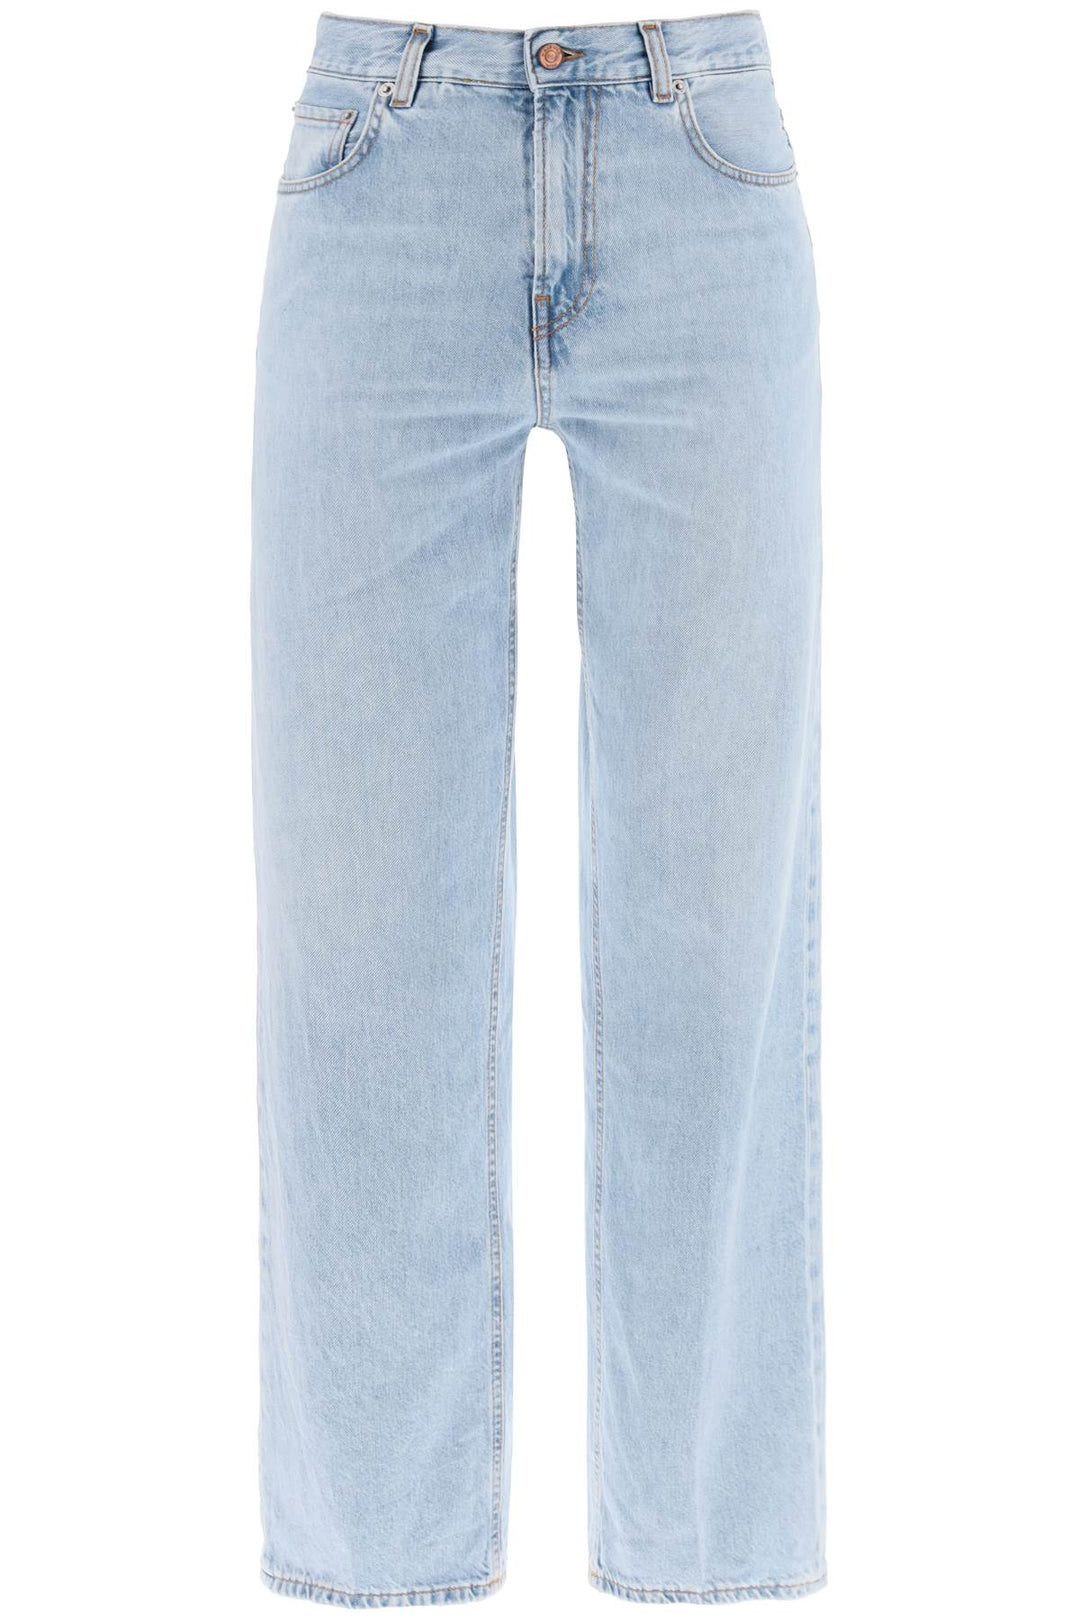 bonnie jeans-0